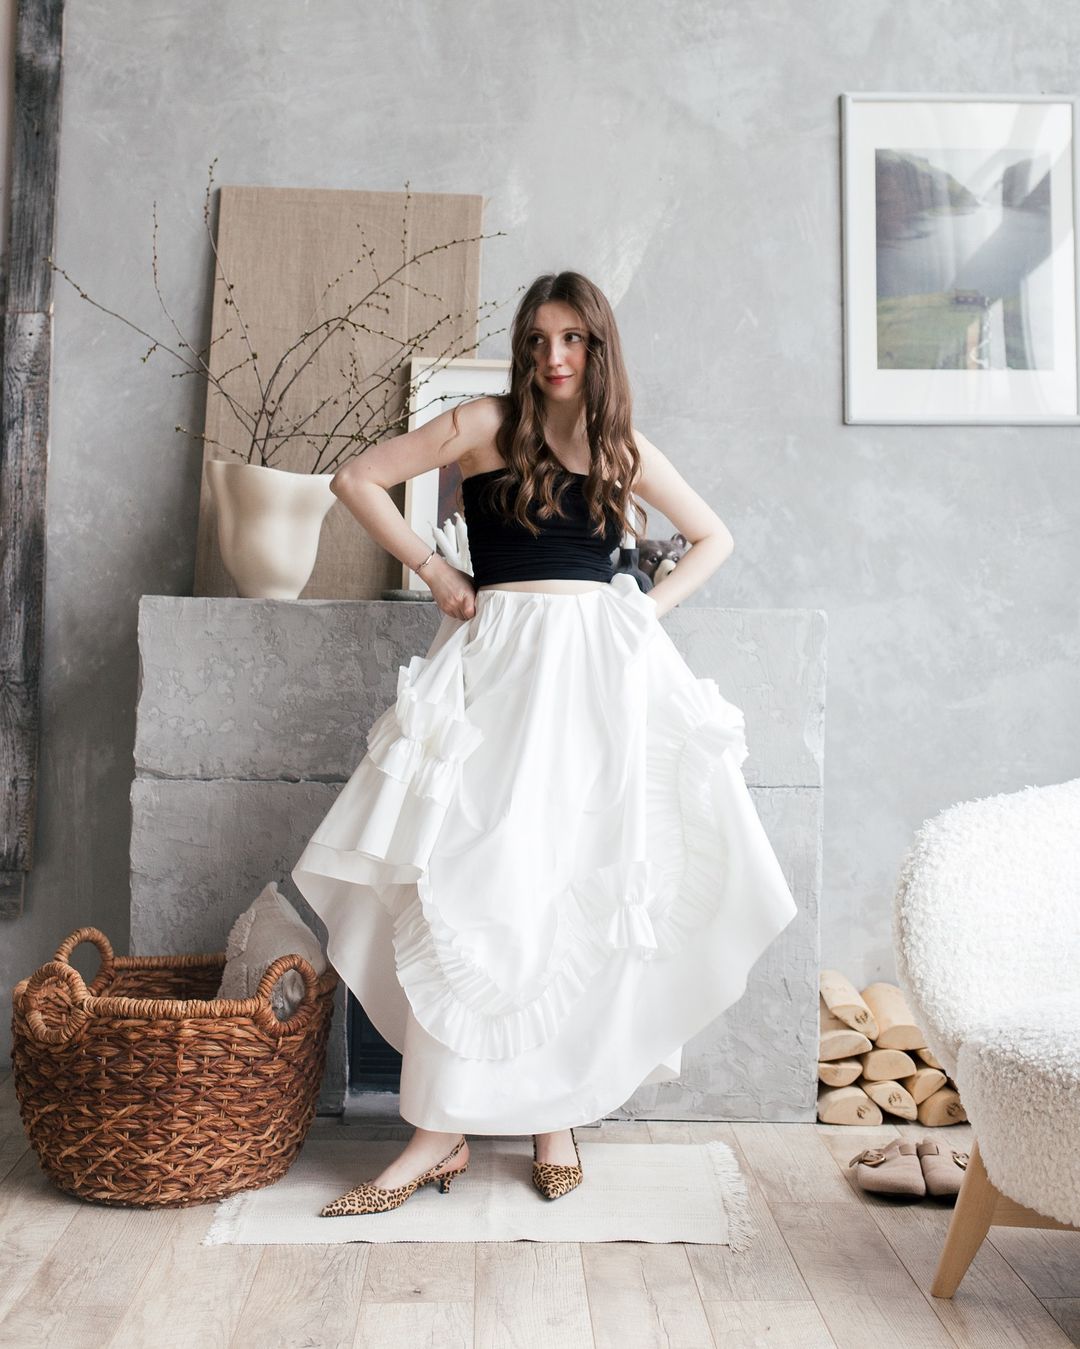 Девушка в пышной белой юбке беларуского бренда Quotidien Maison.